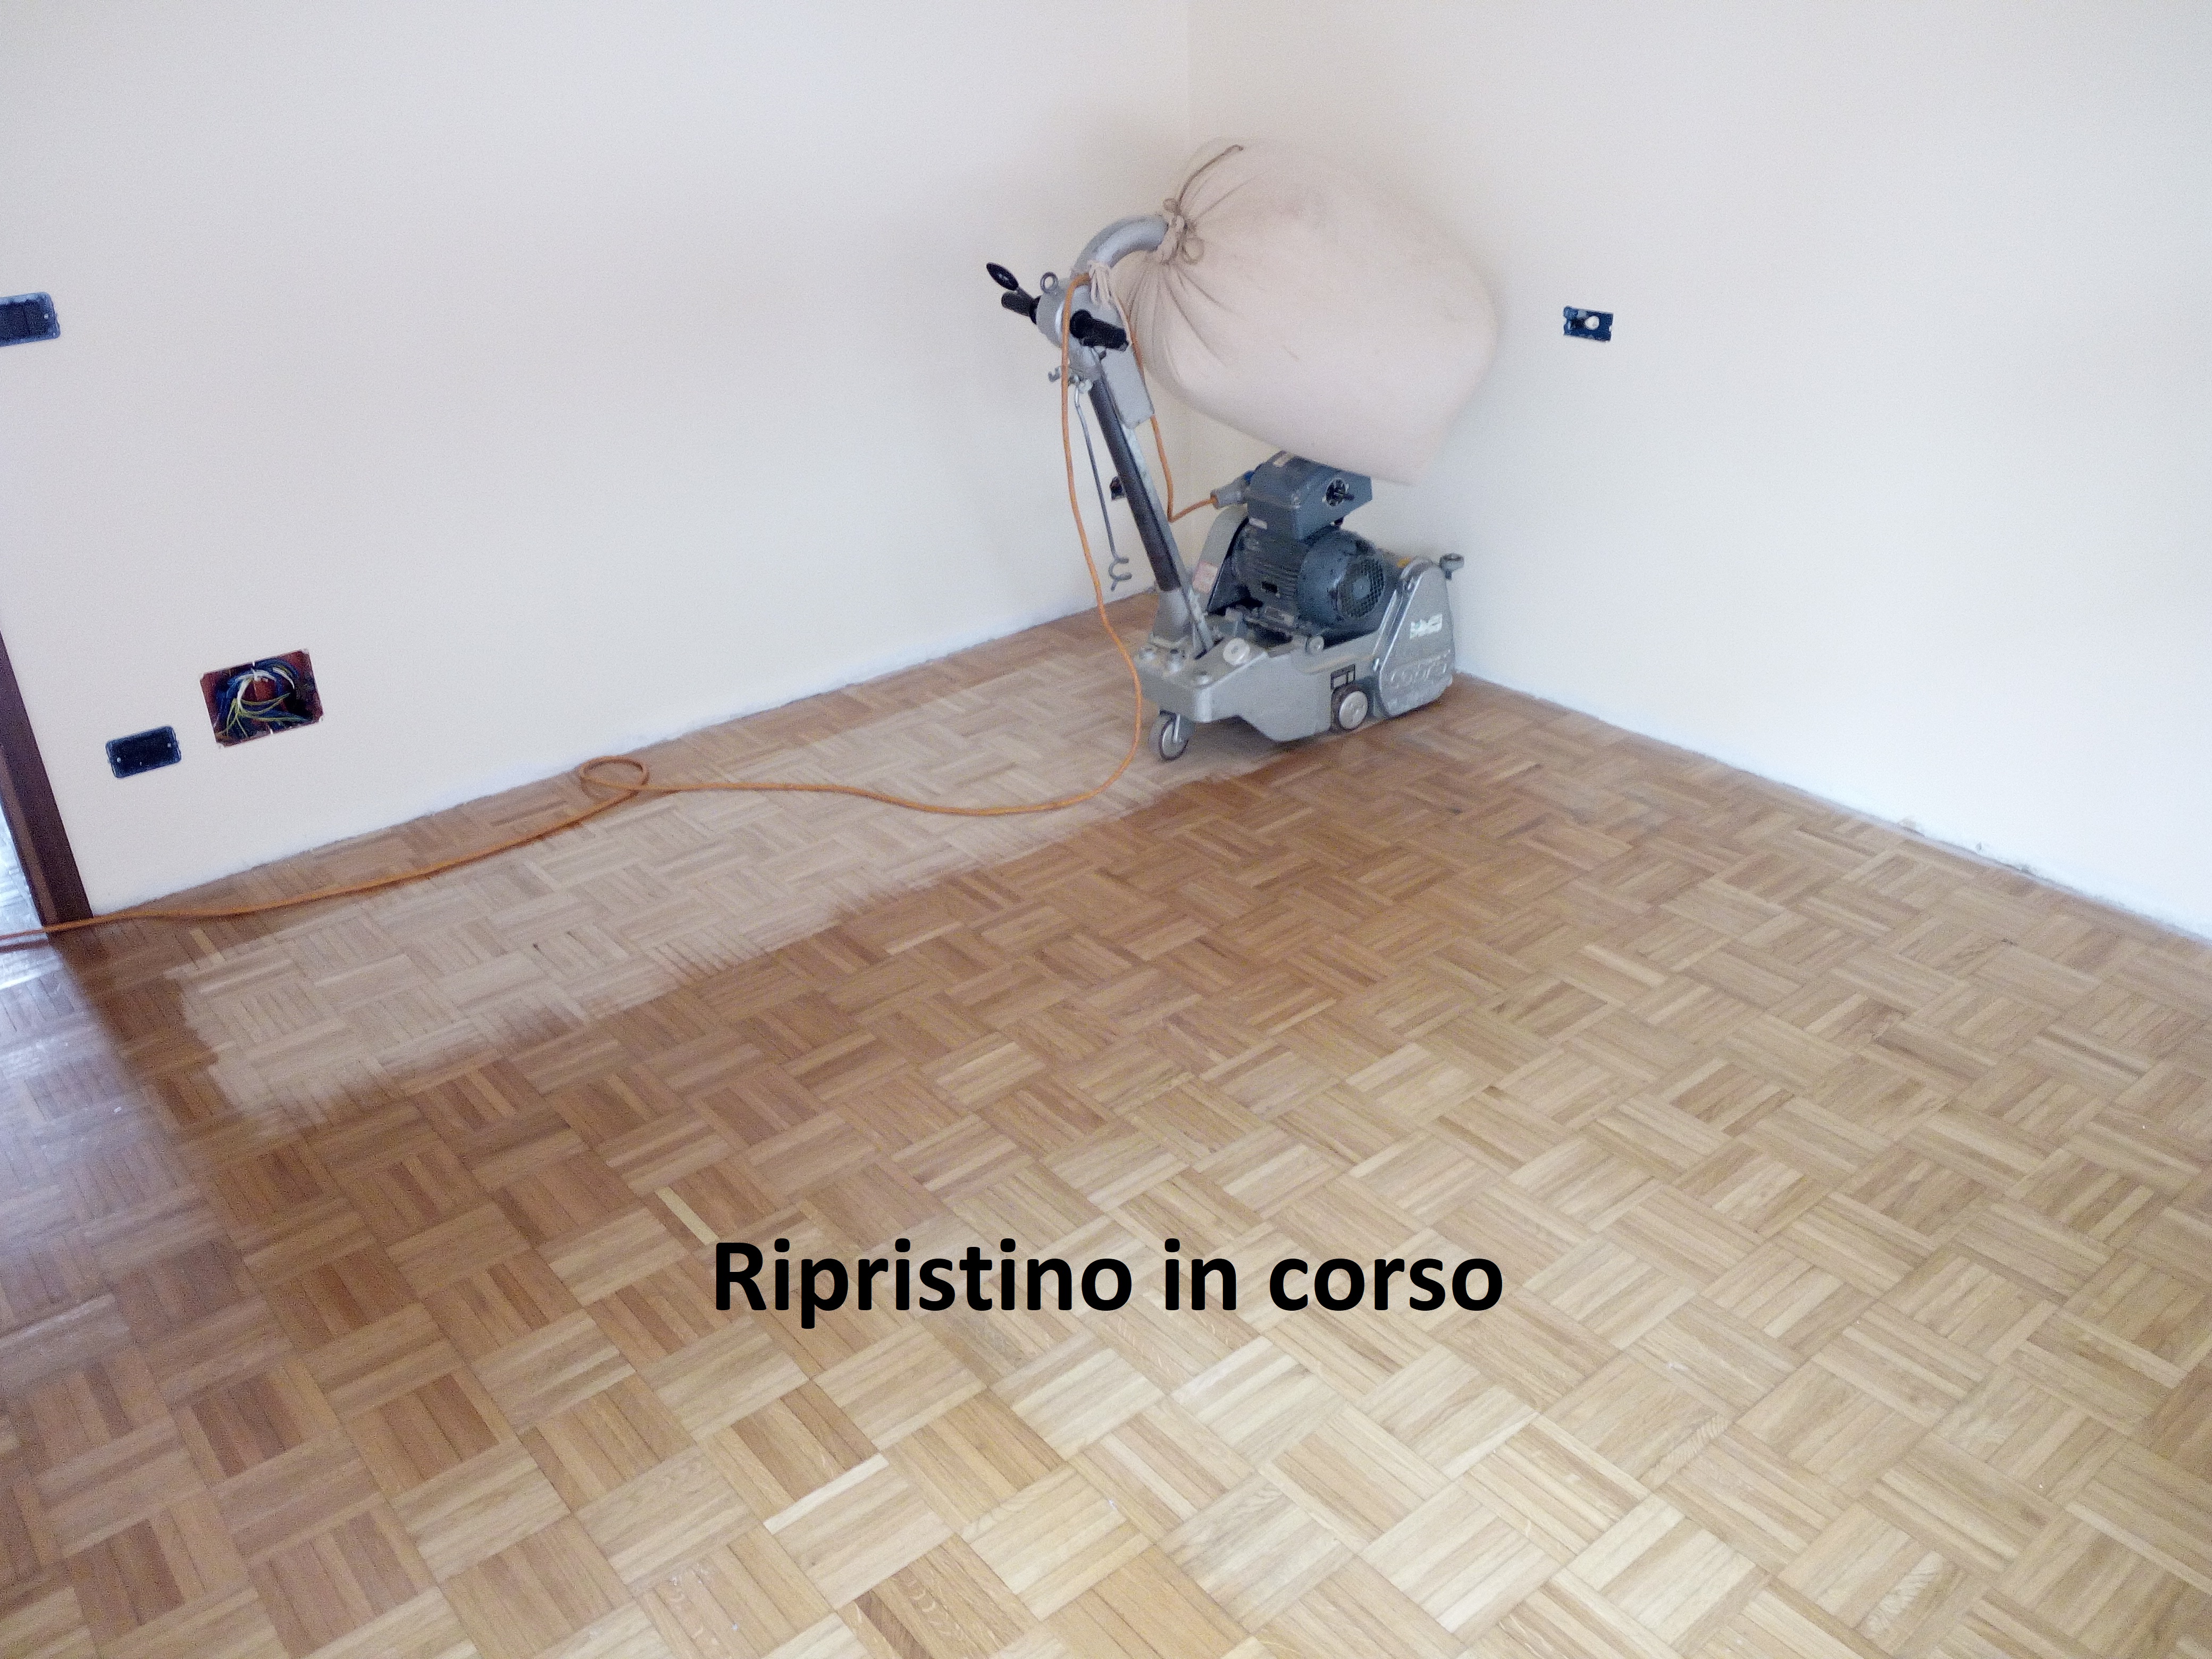 Inter-Nos 2 Tutto parquet – realizzazione e posa di pavimenti in legno a Schio (VI)